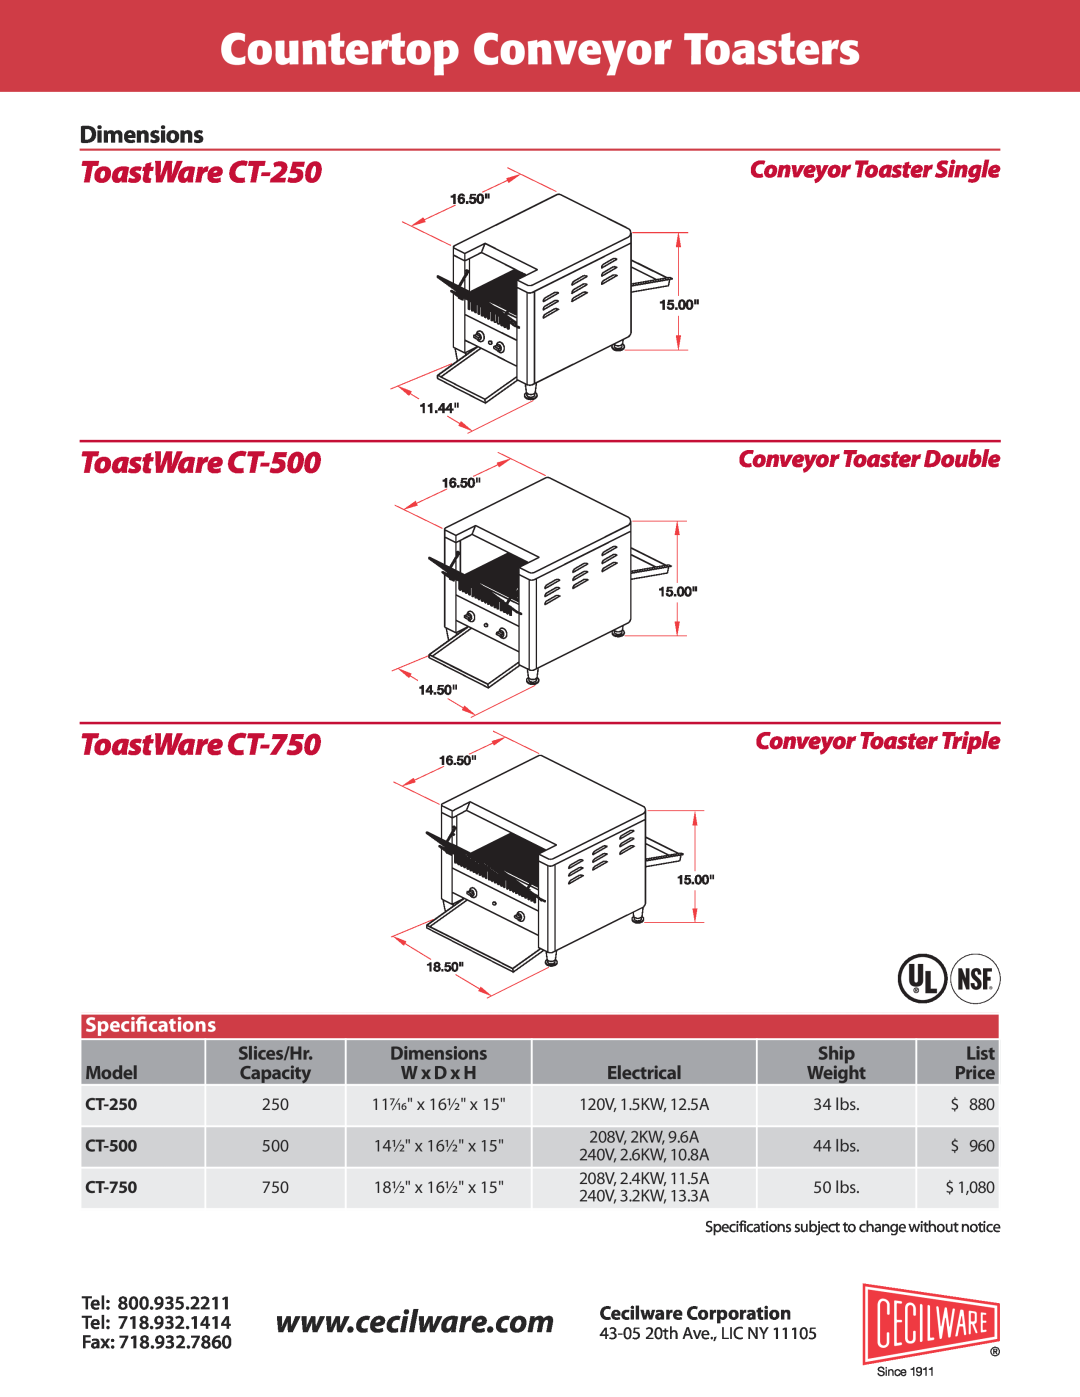 Cecilware Dimensions, Countertop Conveyor Toasters, ToastWare CT-250, ToastWare CT-500, ToastWare CT-750, Speciﬁcations 